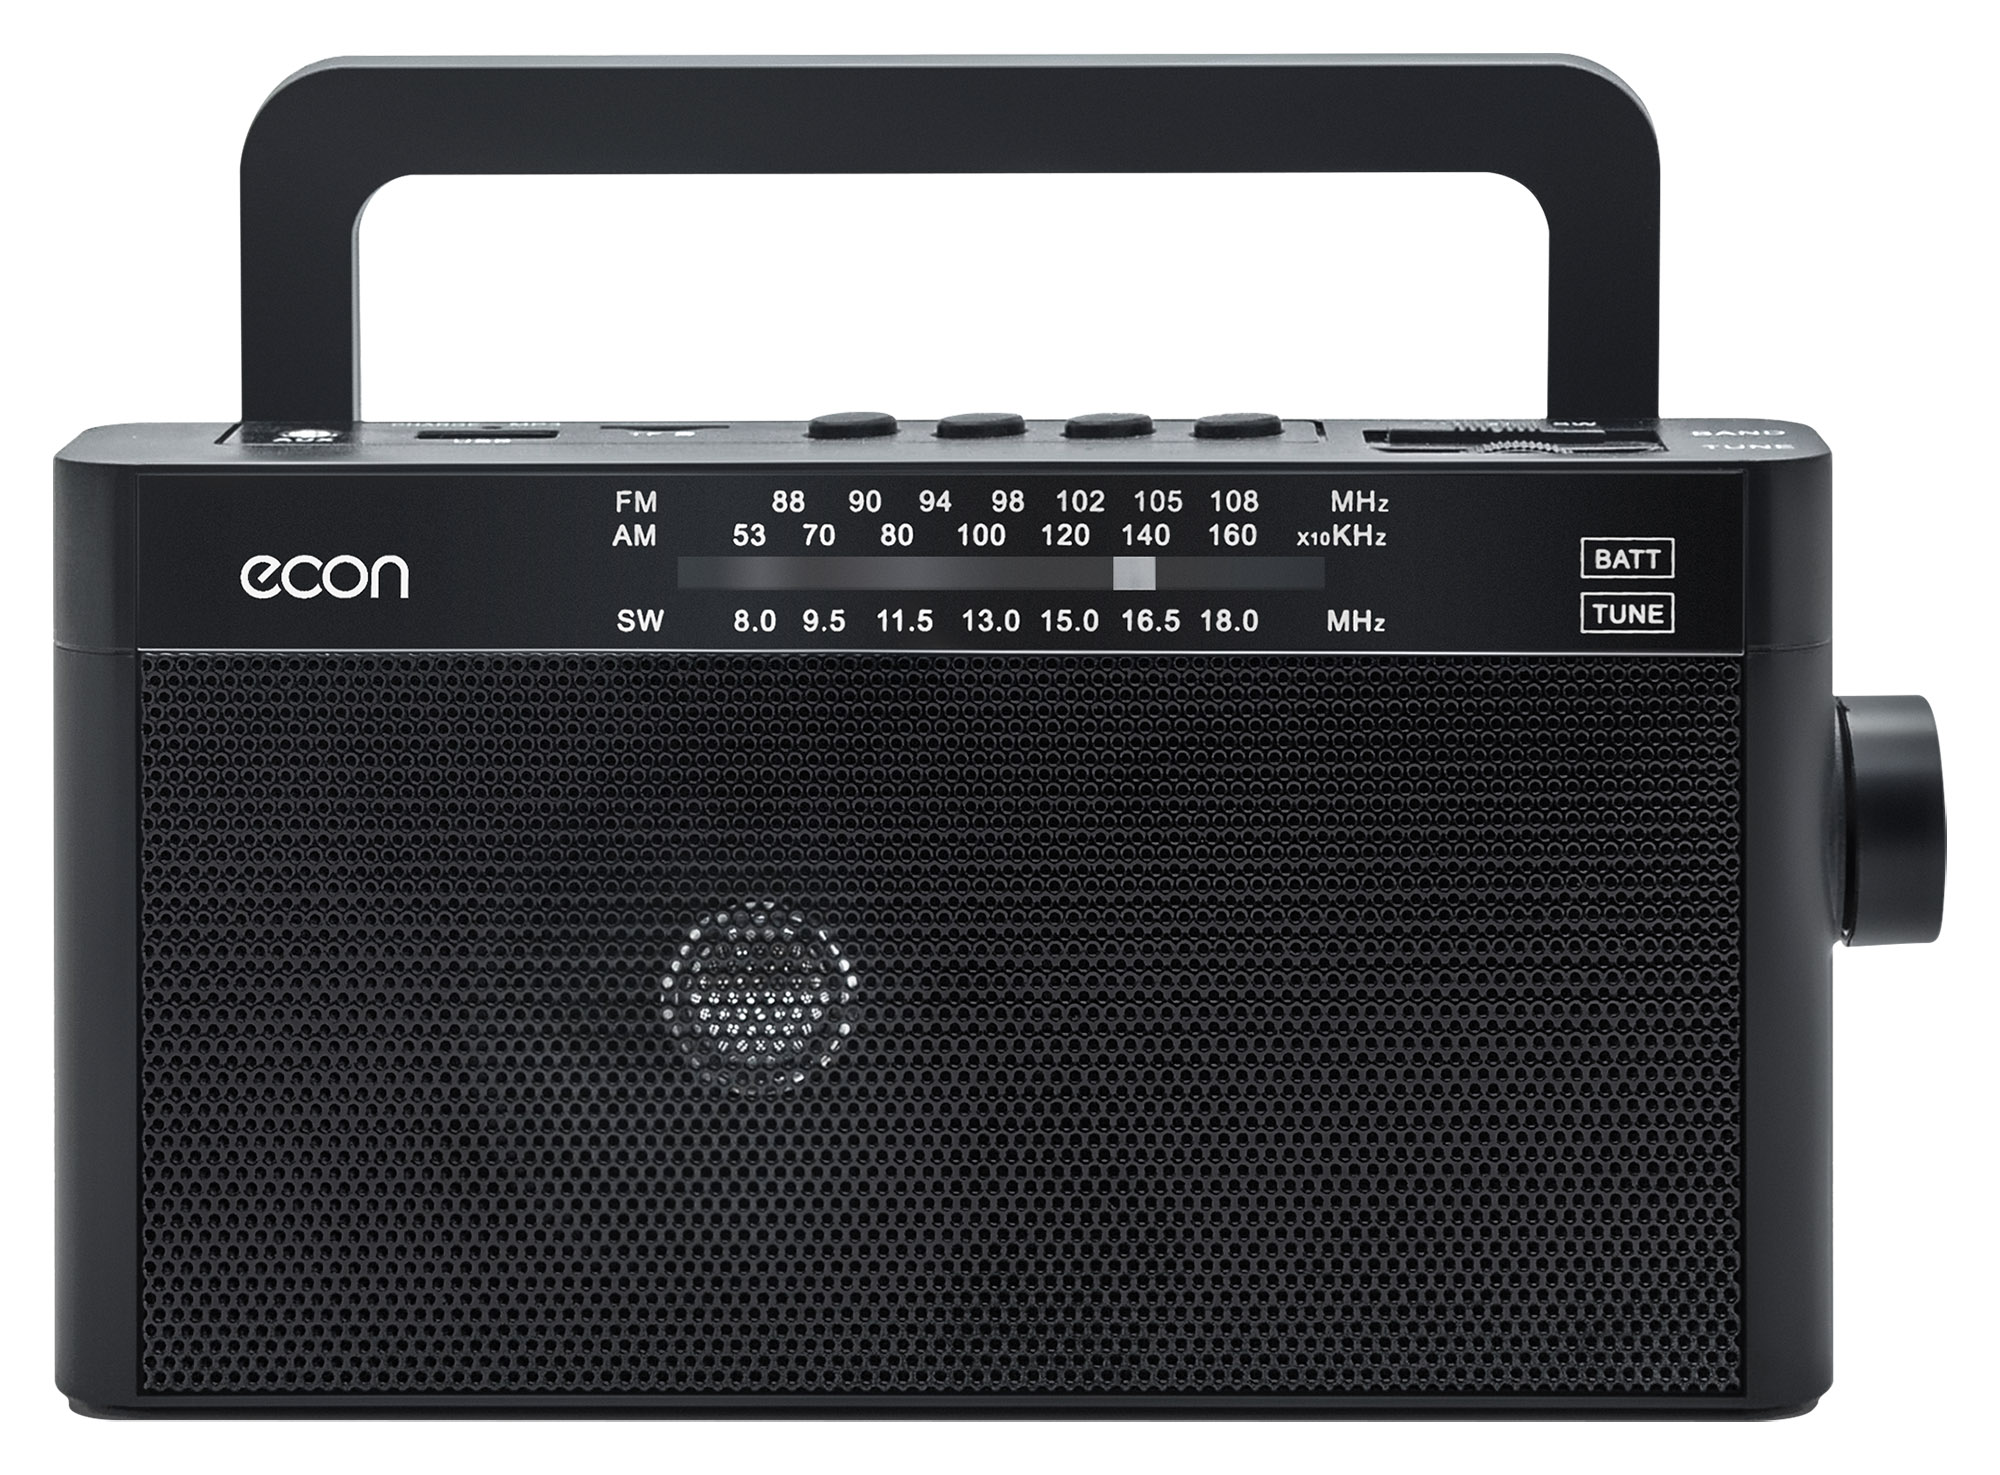 Картинка Радиоприемник ECON ERP-2200UR по разумной цене купить в интернет магазине mall.su